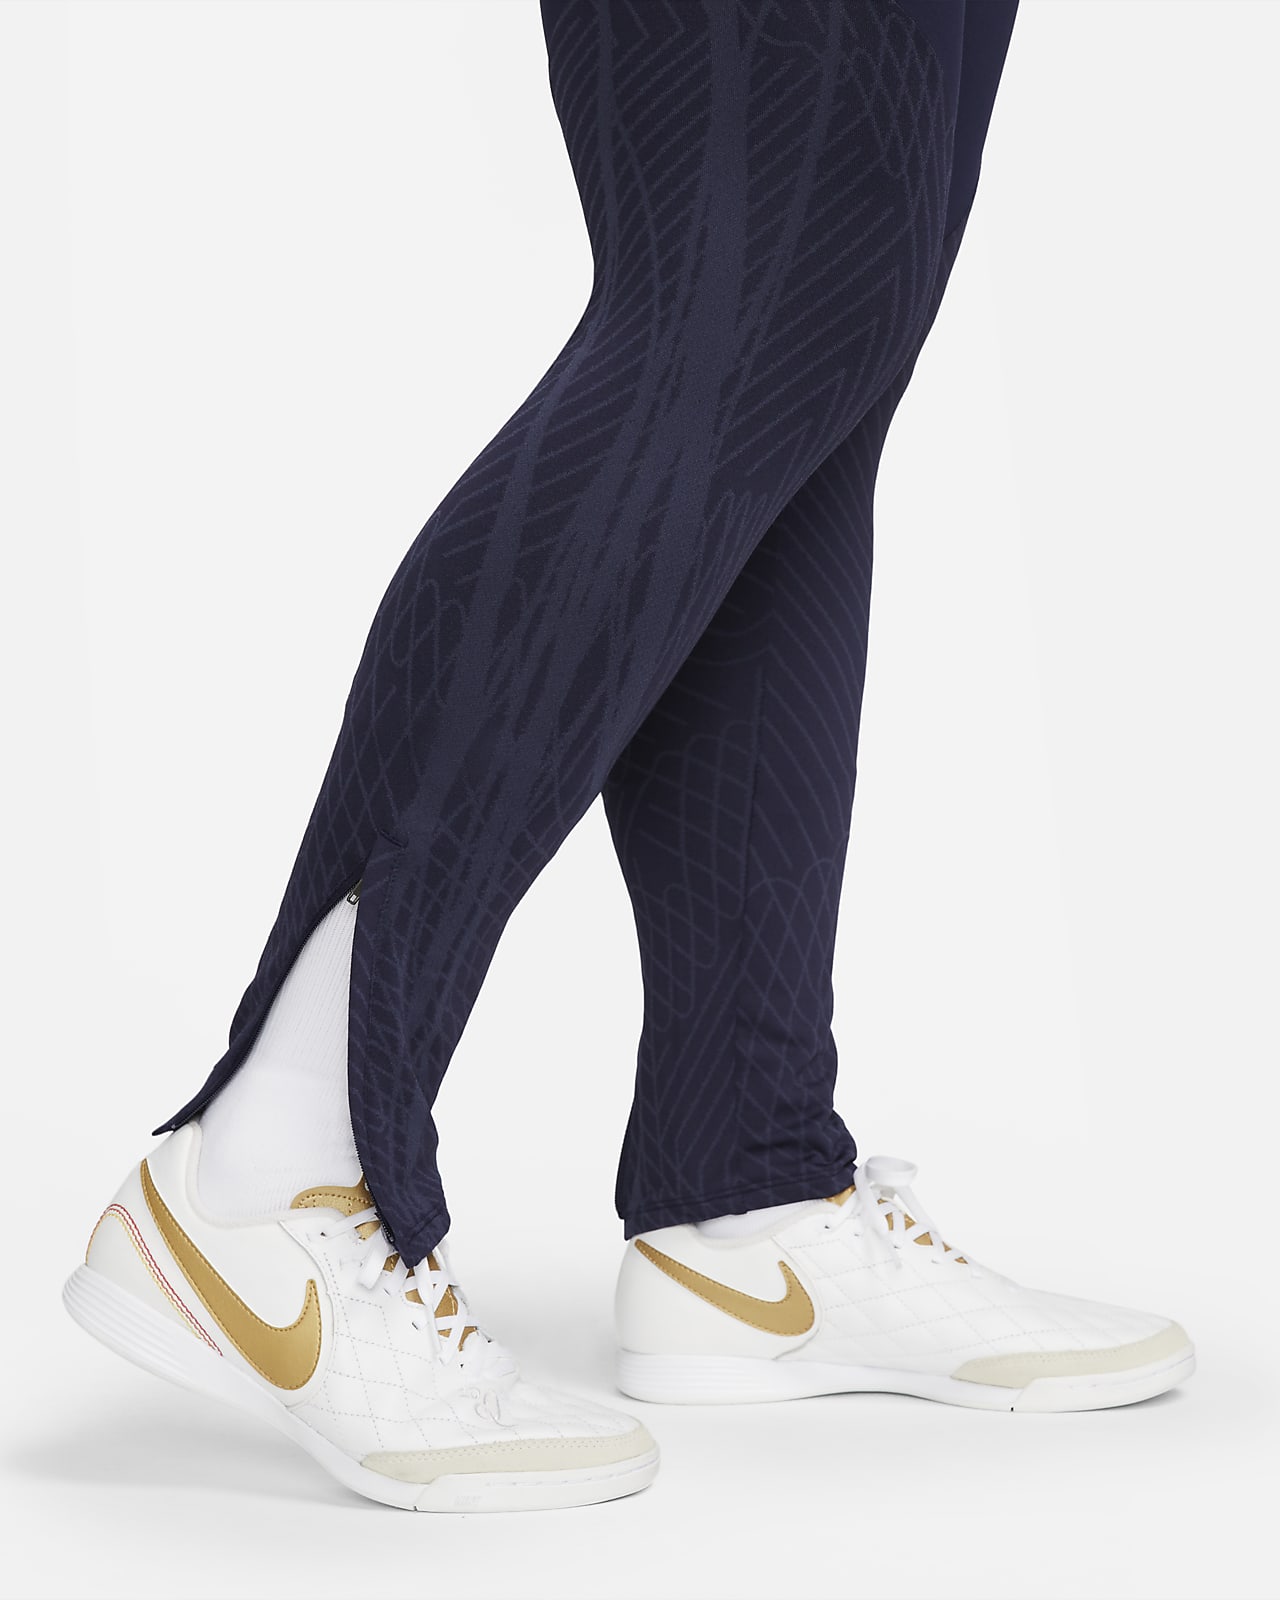 Nike Women's Dri-FIT Strike Soccer Pants